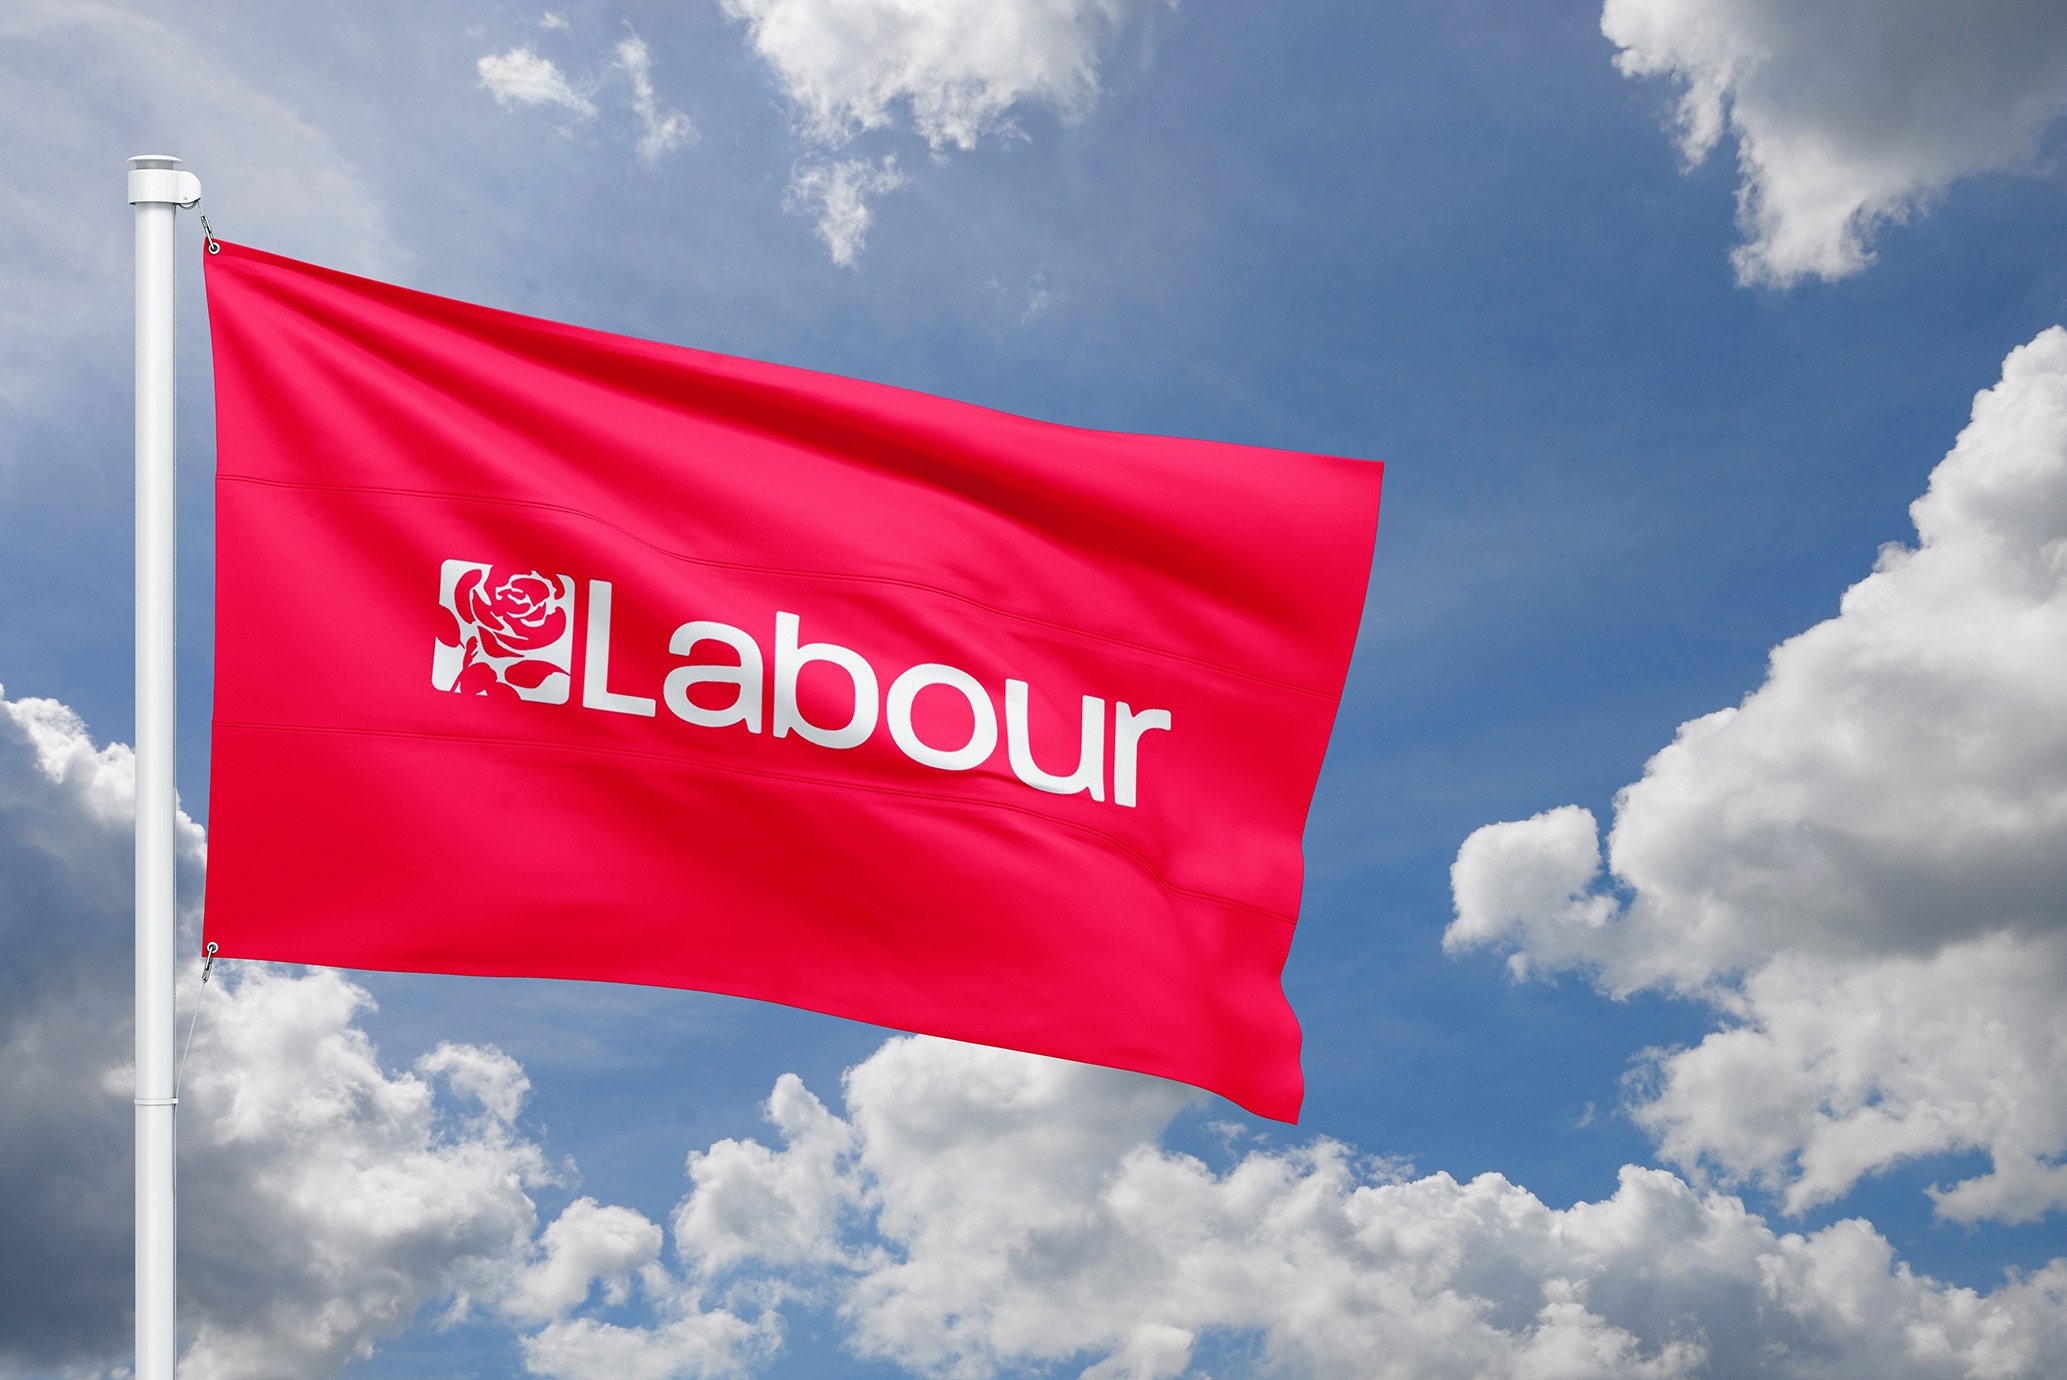 Labour Party flag against a blue sky